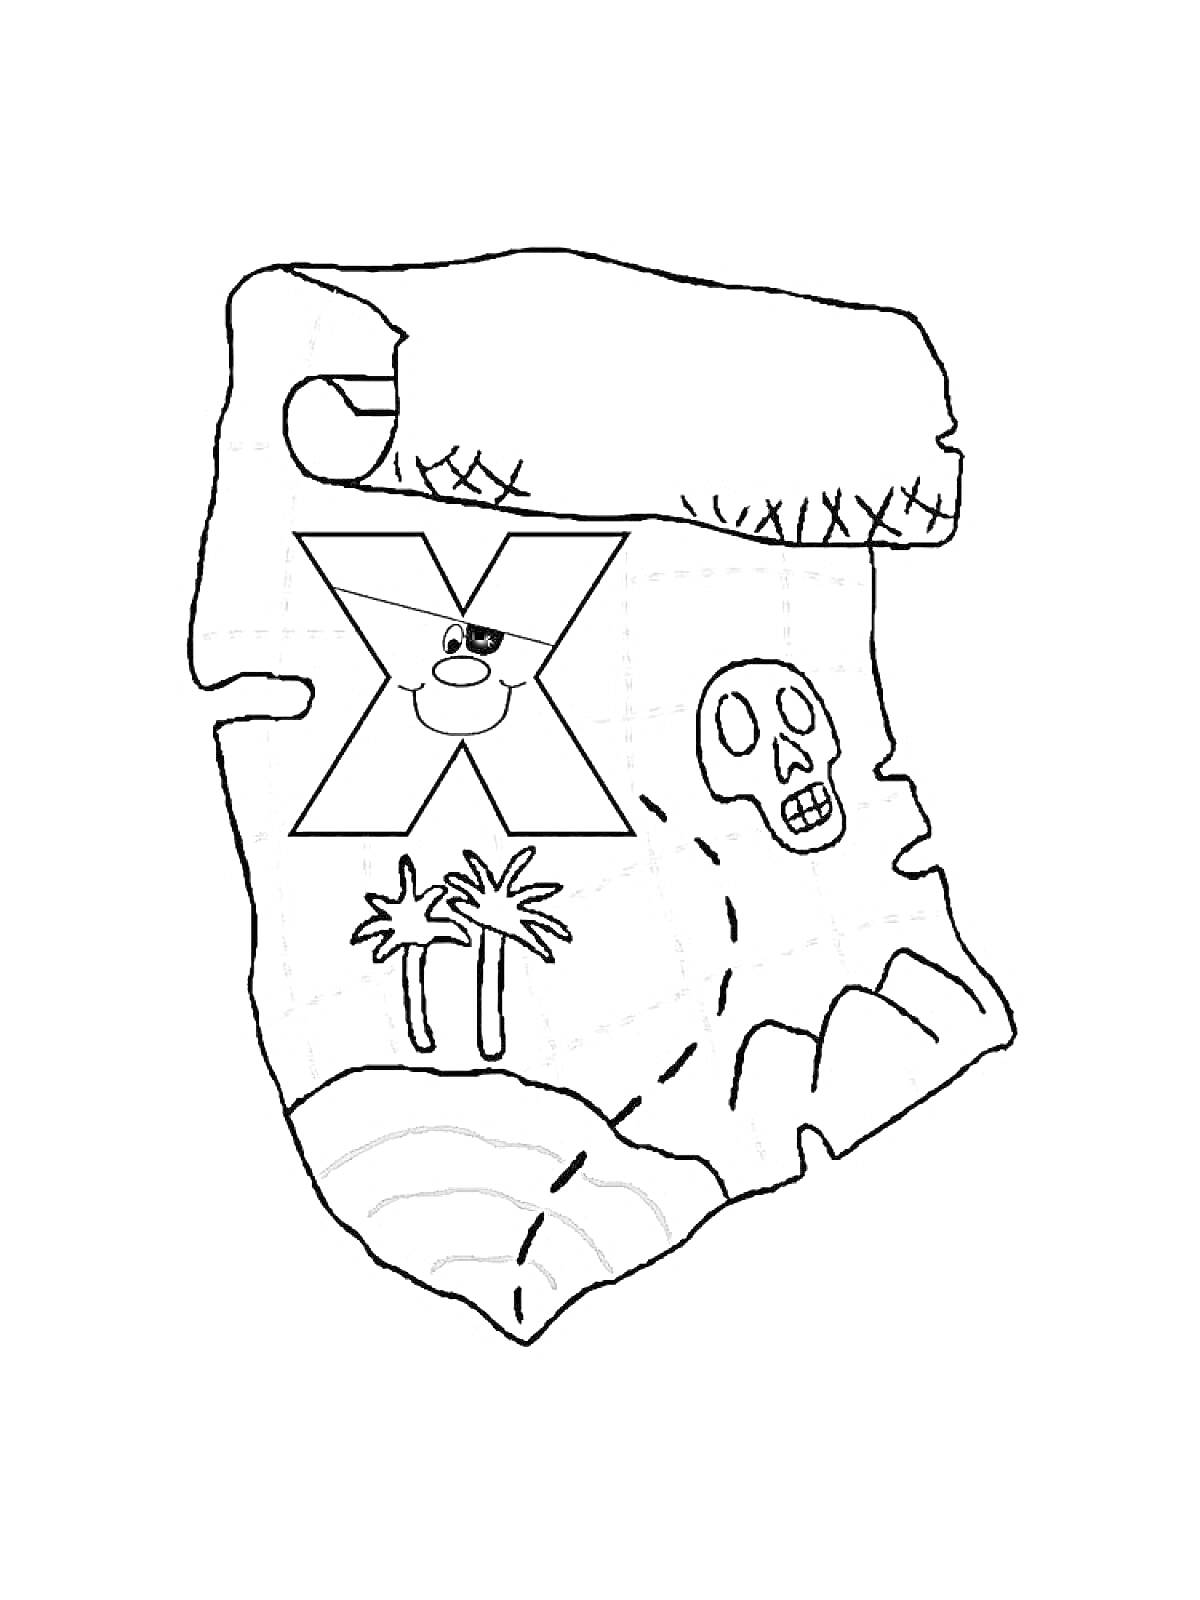 Раскраска Карта сокровищ с черепом, пальмами, горой и отметкой 